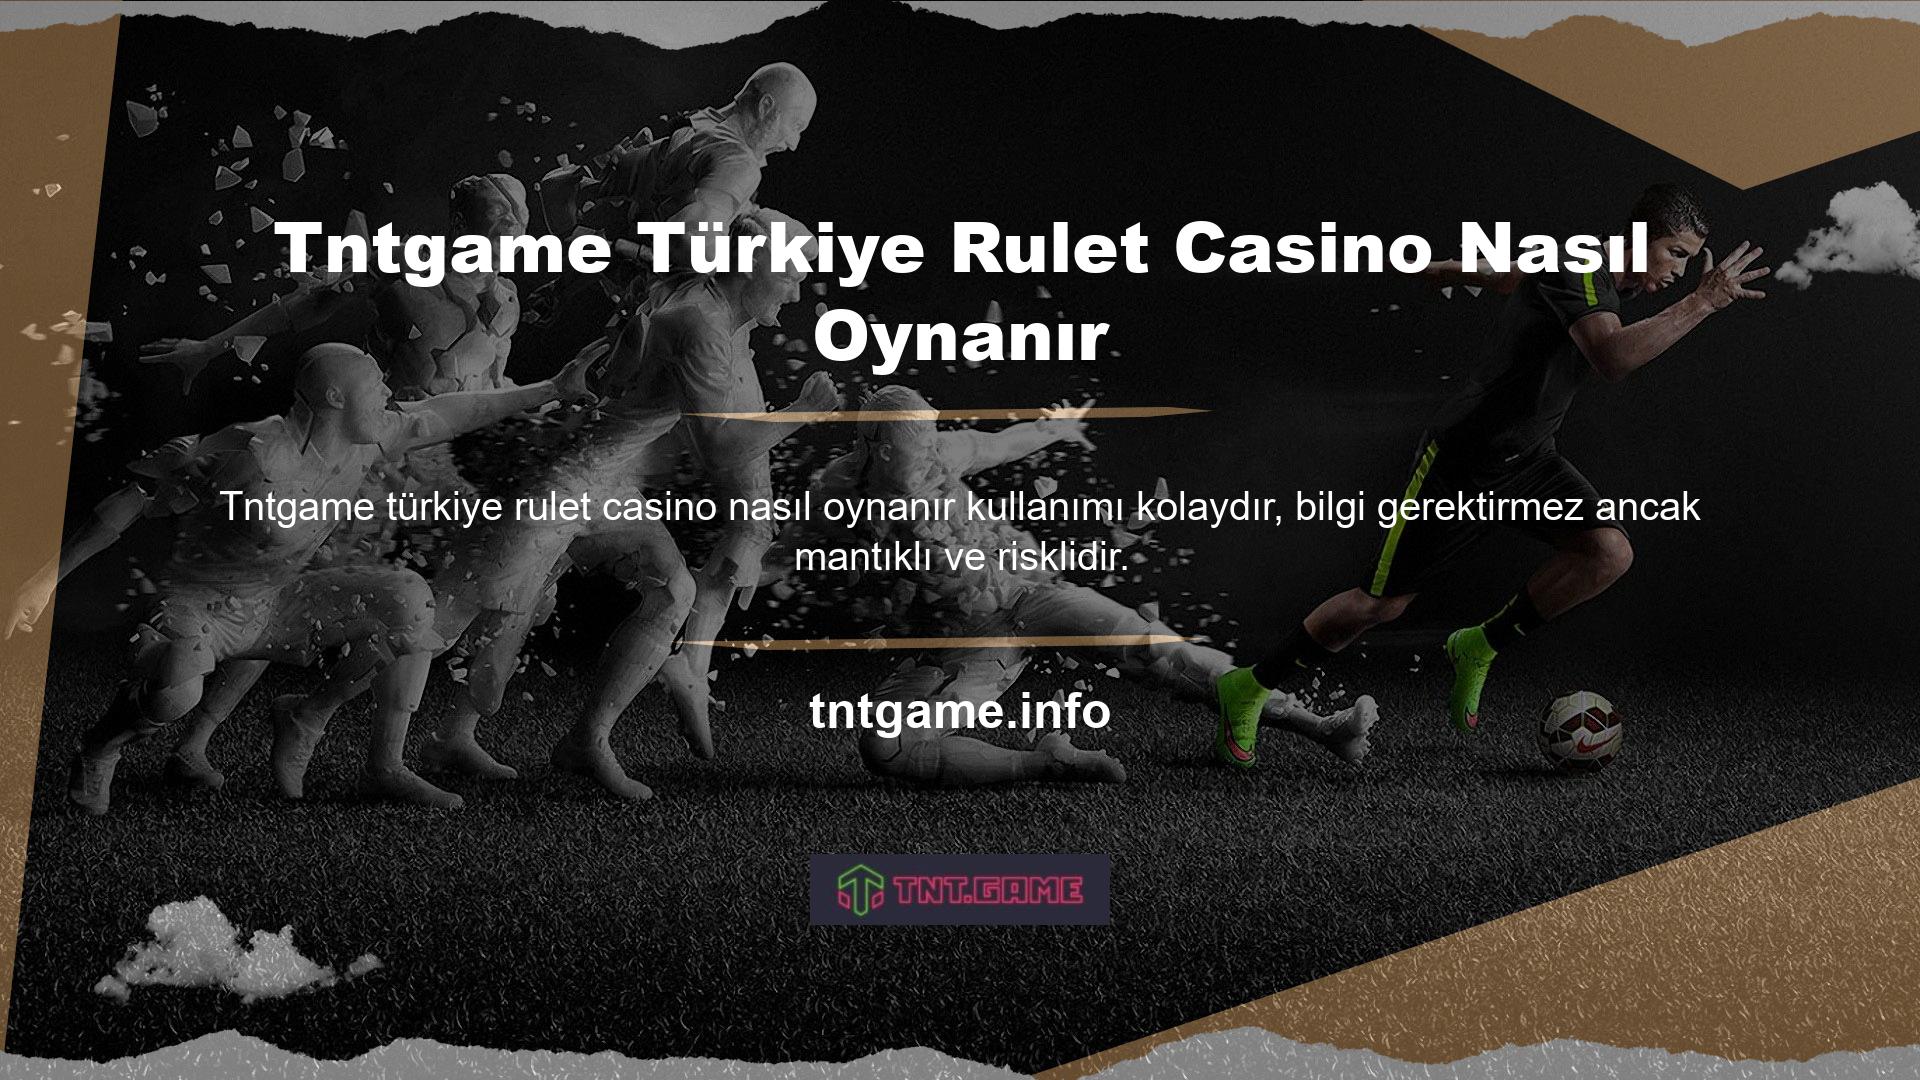 Tntgame Casino Türk Ruleti, tamamen Türkçe olarak geliştirilmiş ve Türk bayiler tarafından sunulan bir oyundur